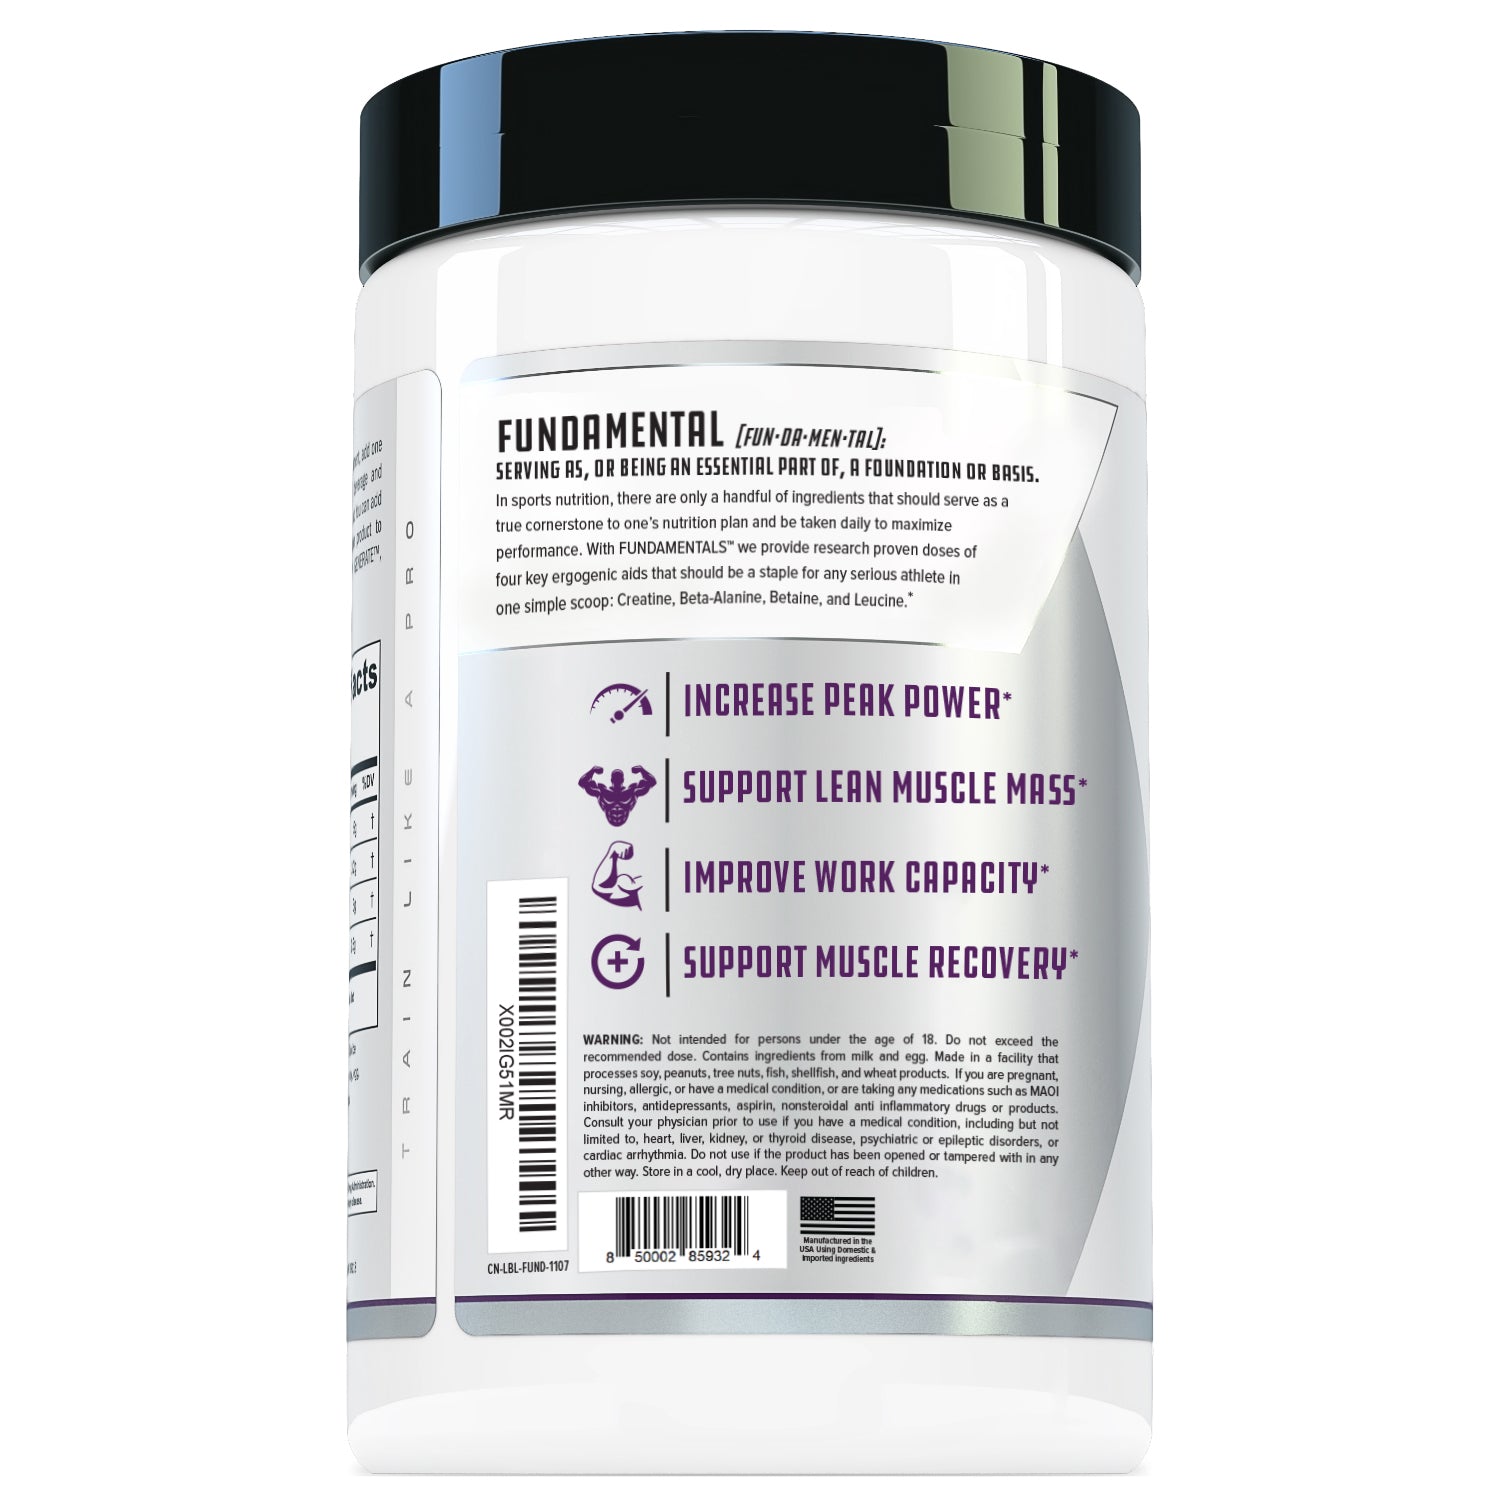 Cutler Nutrition Jay Essentials Pure Creatine Monohydrate Powder